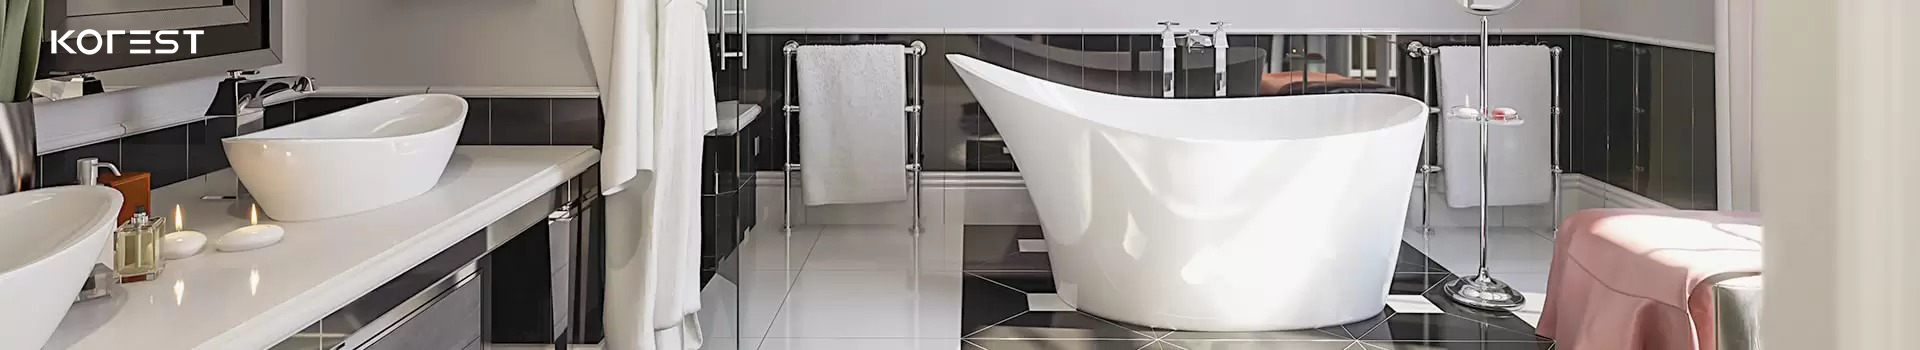 Hướng dẫn chi tiết cách thay vòi nước lavabo đơn giản tại nhà